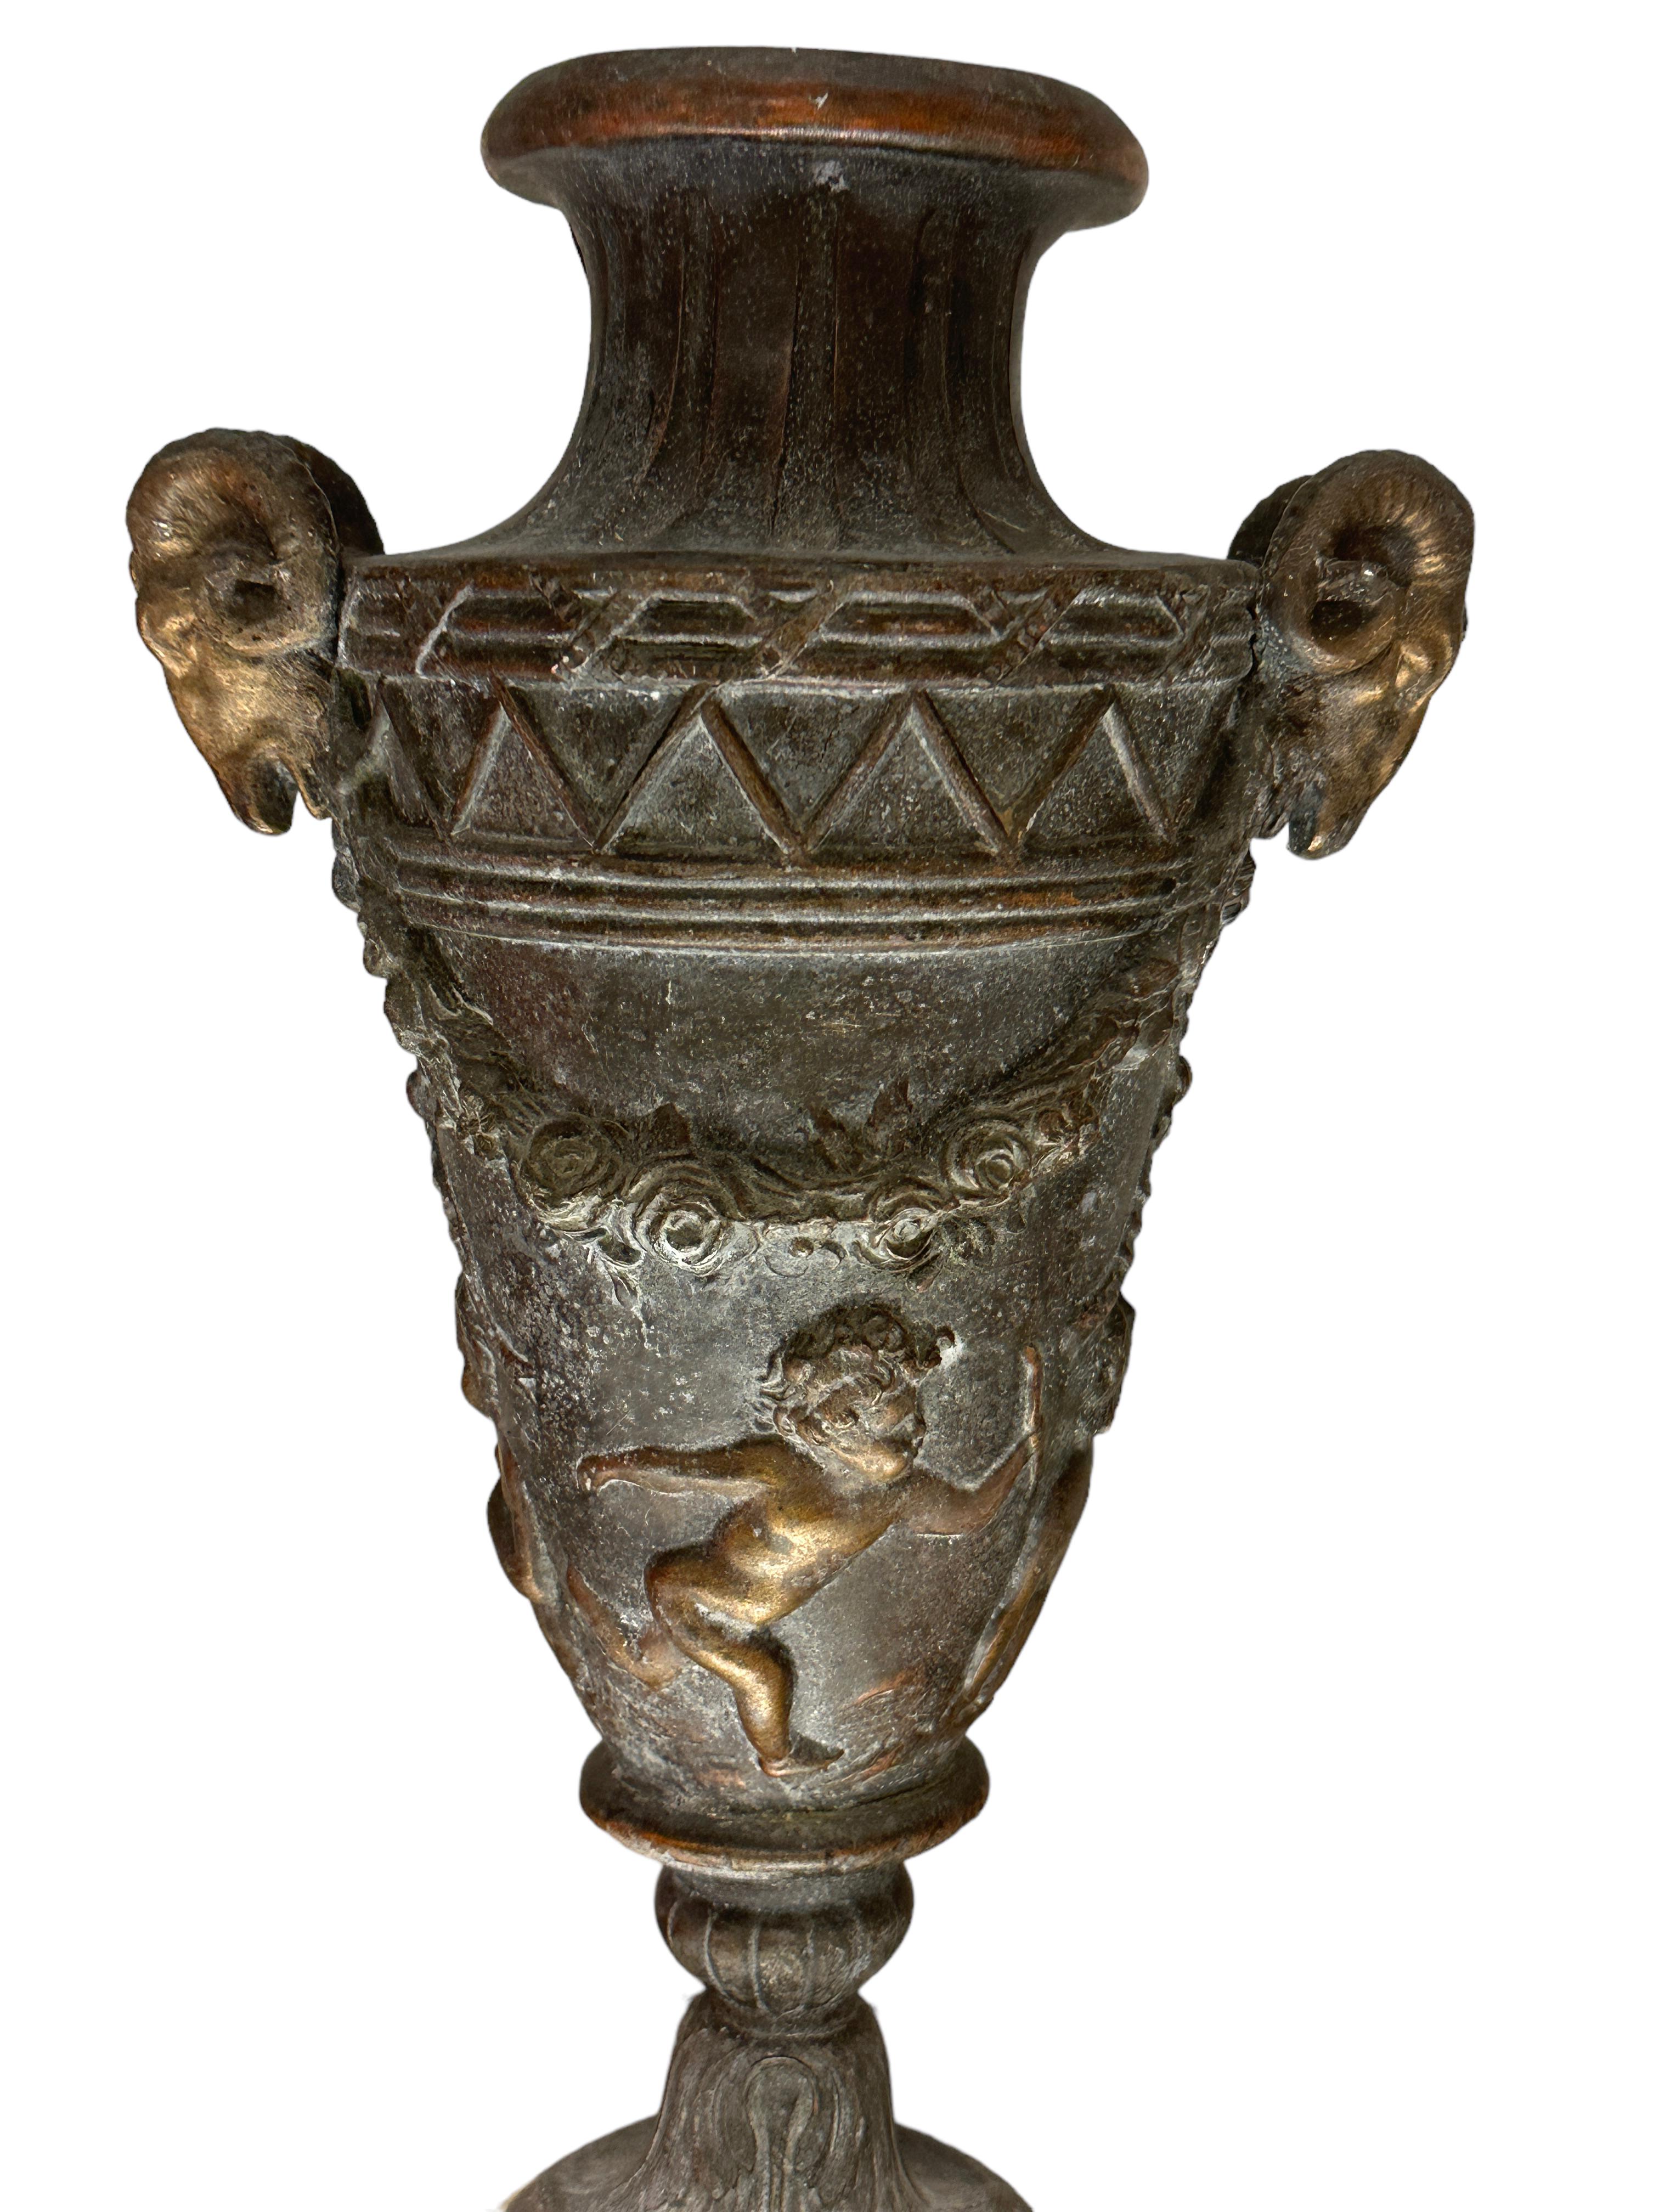 Ein schönes Paar Bacchanal-Vasen aus patinierter Bronze.
Die Vasen sind mit Masken modelliert, die chimärische Steinböcke darstellen, flankiert von Lorbeergirlanden, über denen fein geschnitzte Reliefs von jungen, laufenden Cherubinen zu sehen sind.